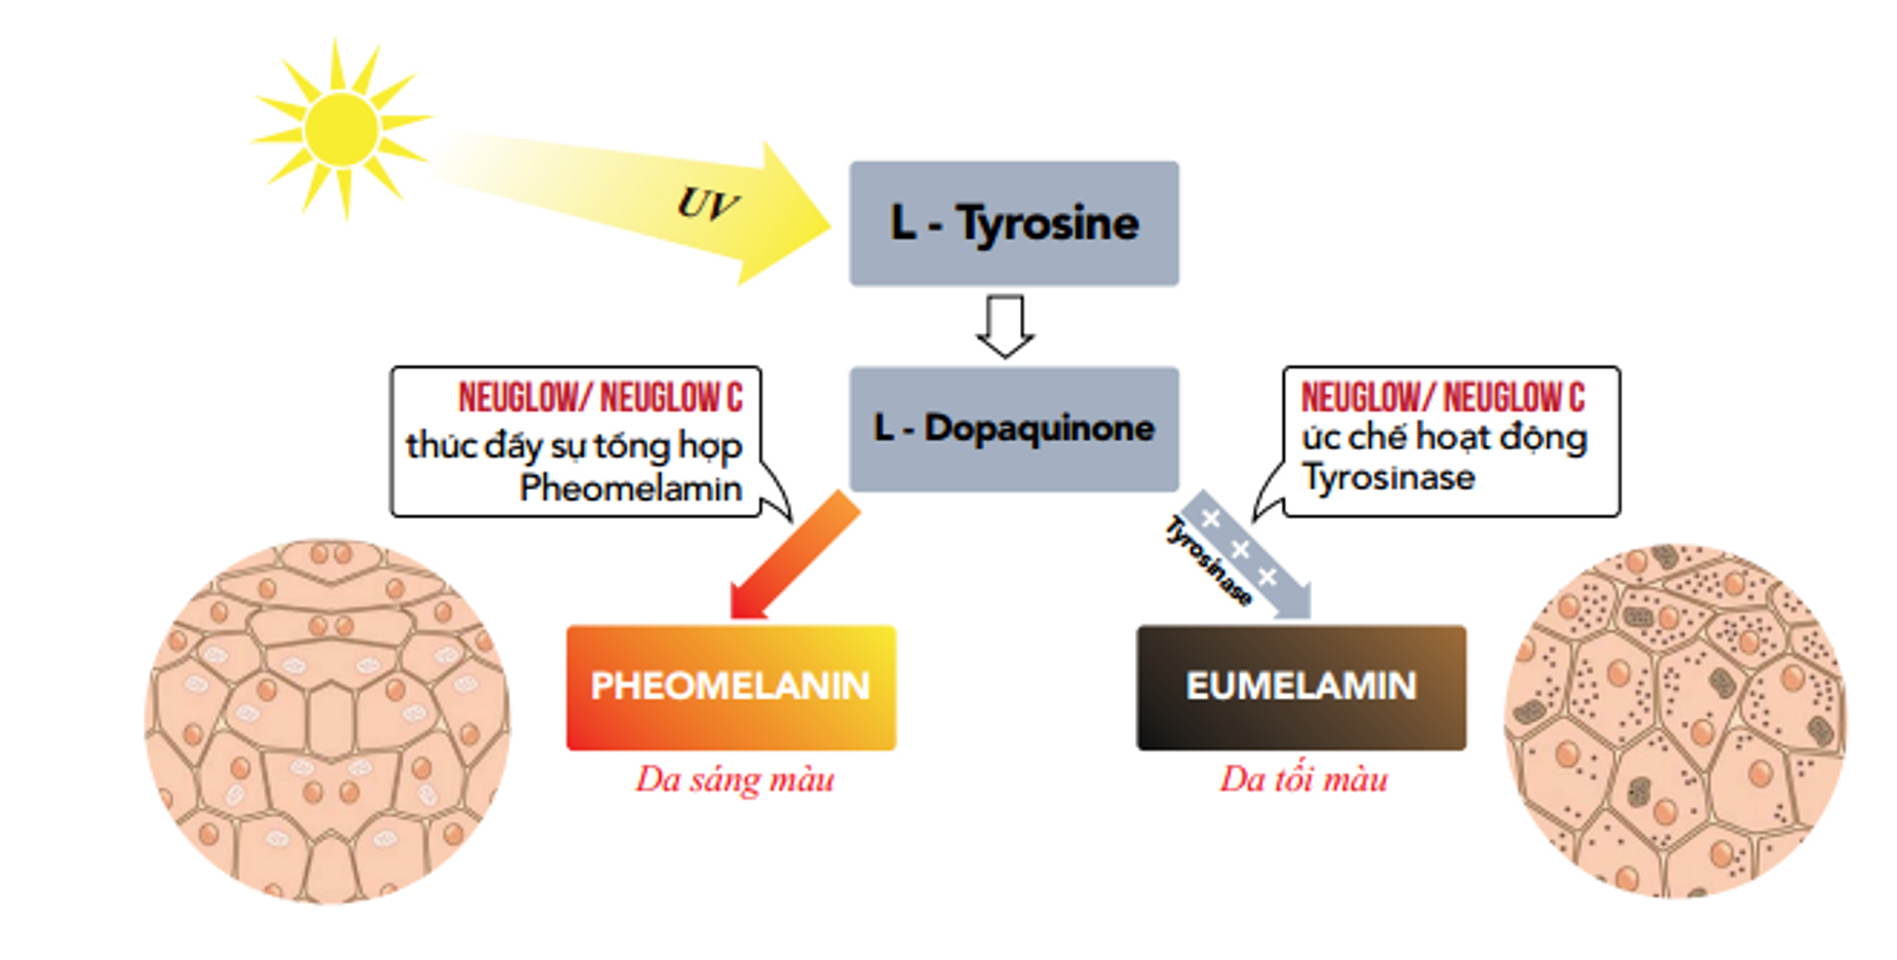 Cơ chế làm trắng da của Glutathione có trong viên uống Neuglow